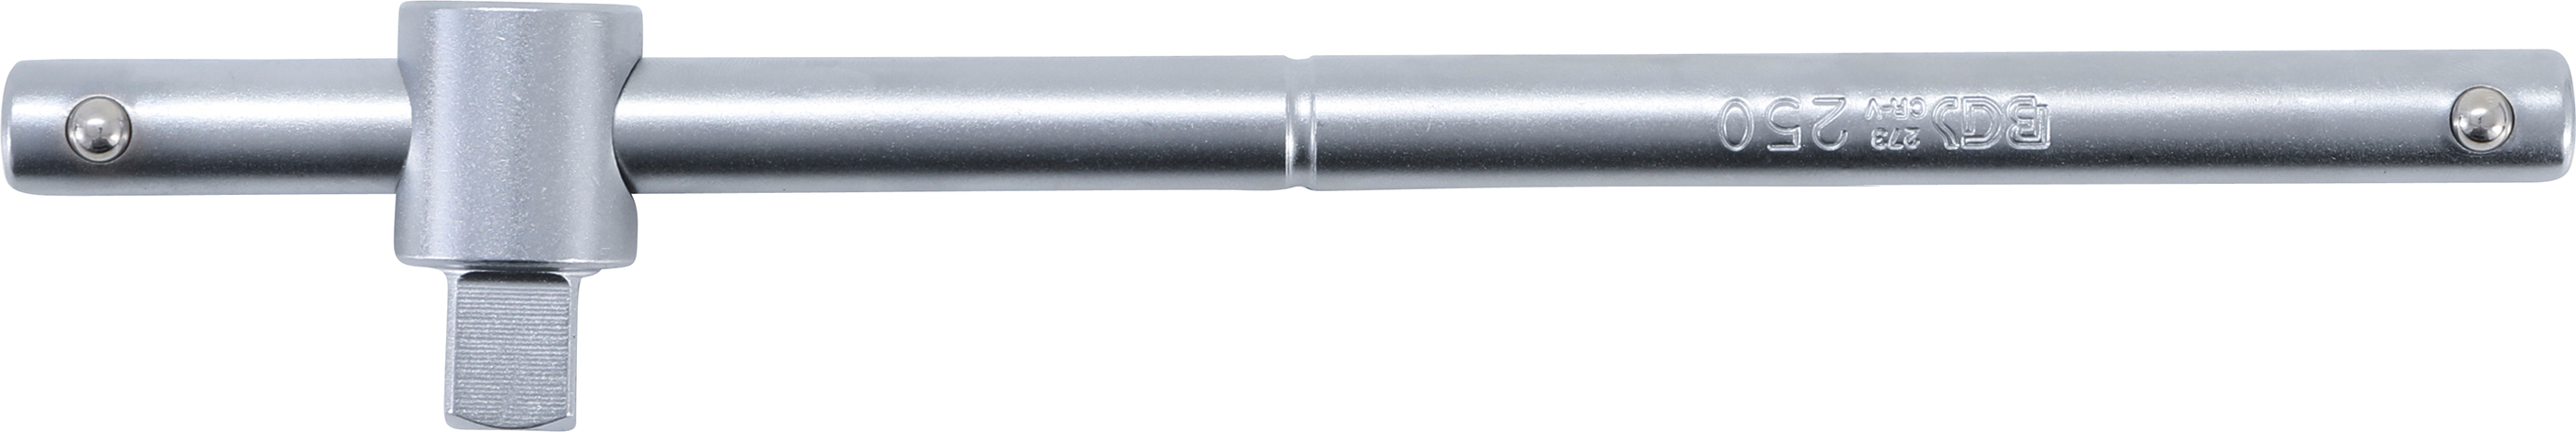 Gleitgriff | Abtrieb Außenvierkant 12,5 mm (1/2")